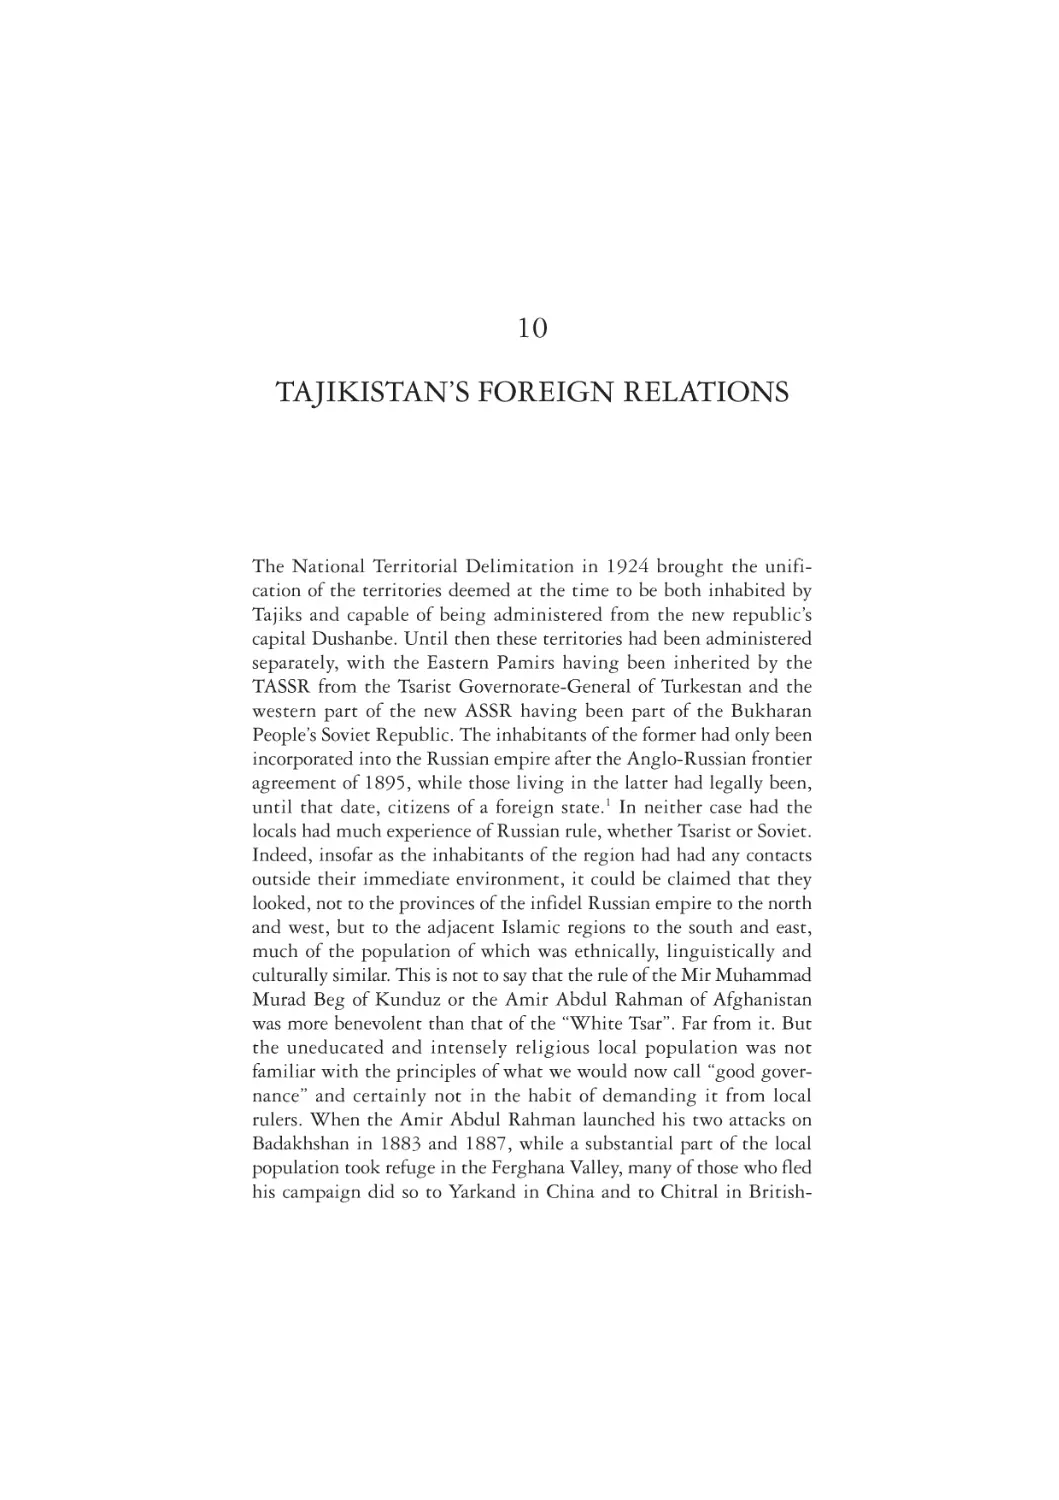 10. Tajikistan's Foreign Relations